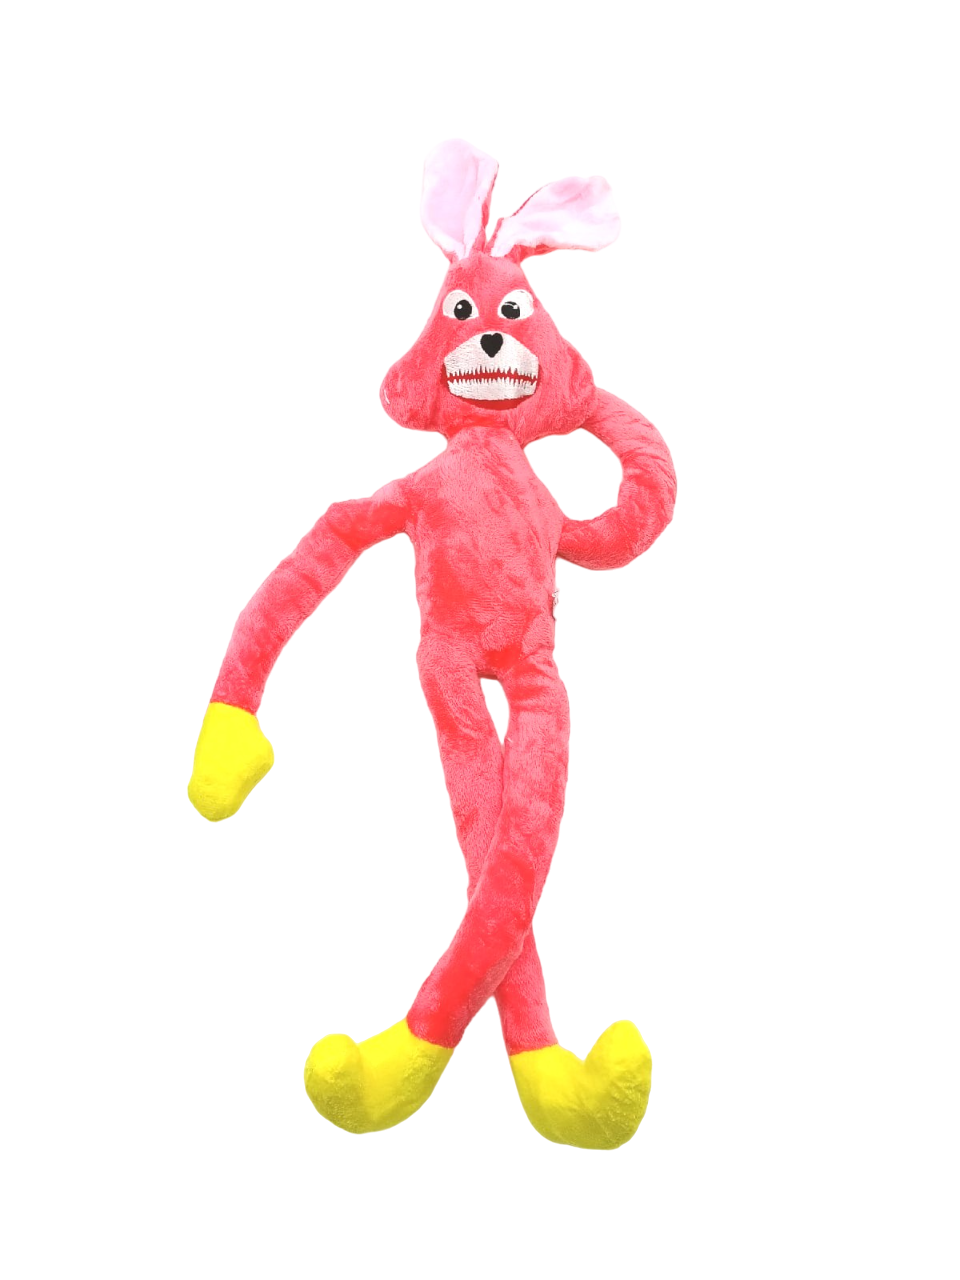 Игрушка мягкая заяц-забегаец 60 см розовый пушистый рюкзак panawealth хагги вагги кисси мисси скари лари красный